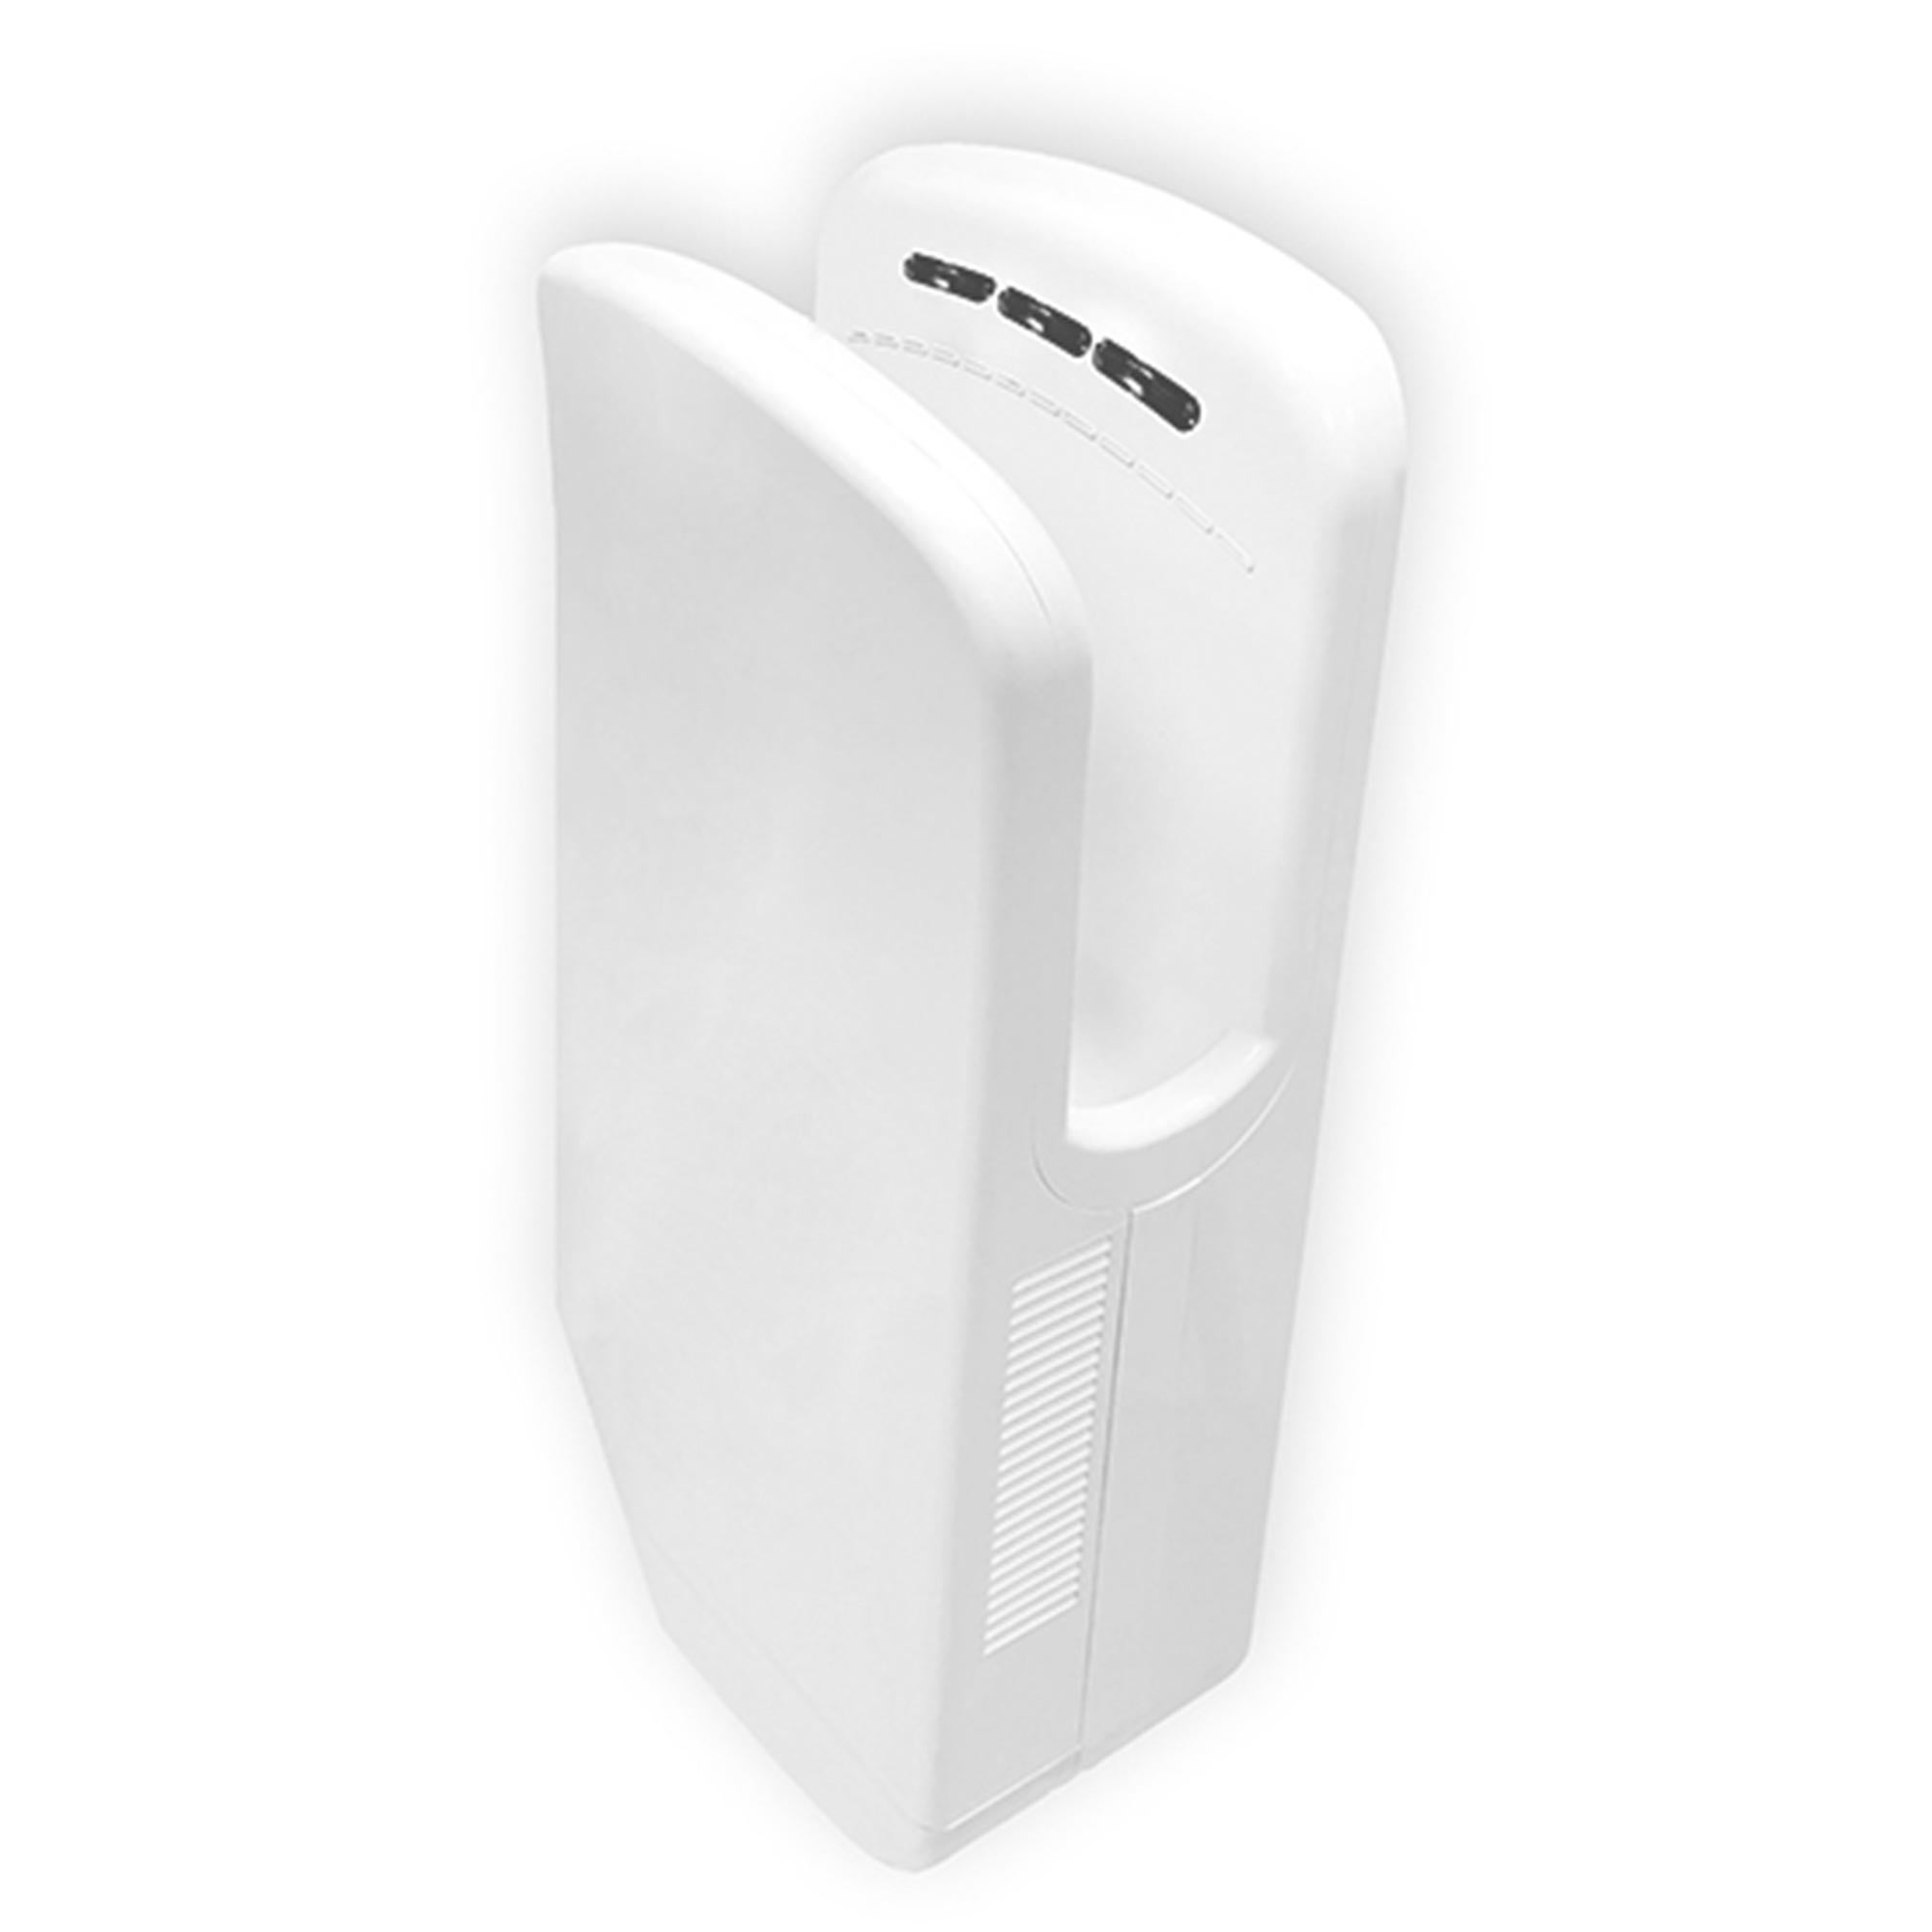 Colombo Design B99810-GR CONTRACT asciugamani elettrico eco-jet ad  inserimento verticale delle mani, con vaschetta di raccolta acqua, doppio  filtro antibatterico, resistenza elettrica on/off, colore grigio